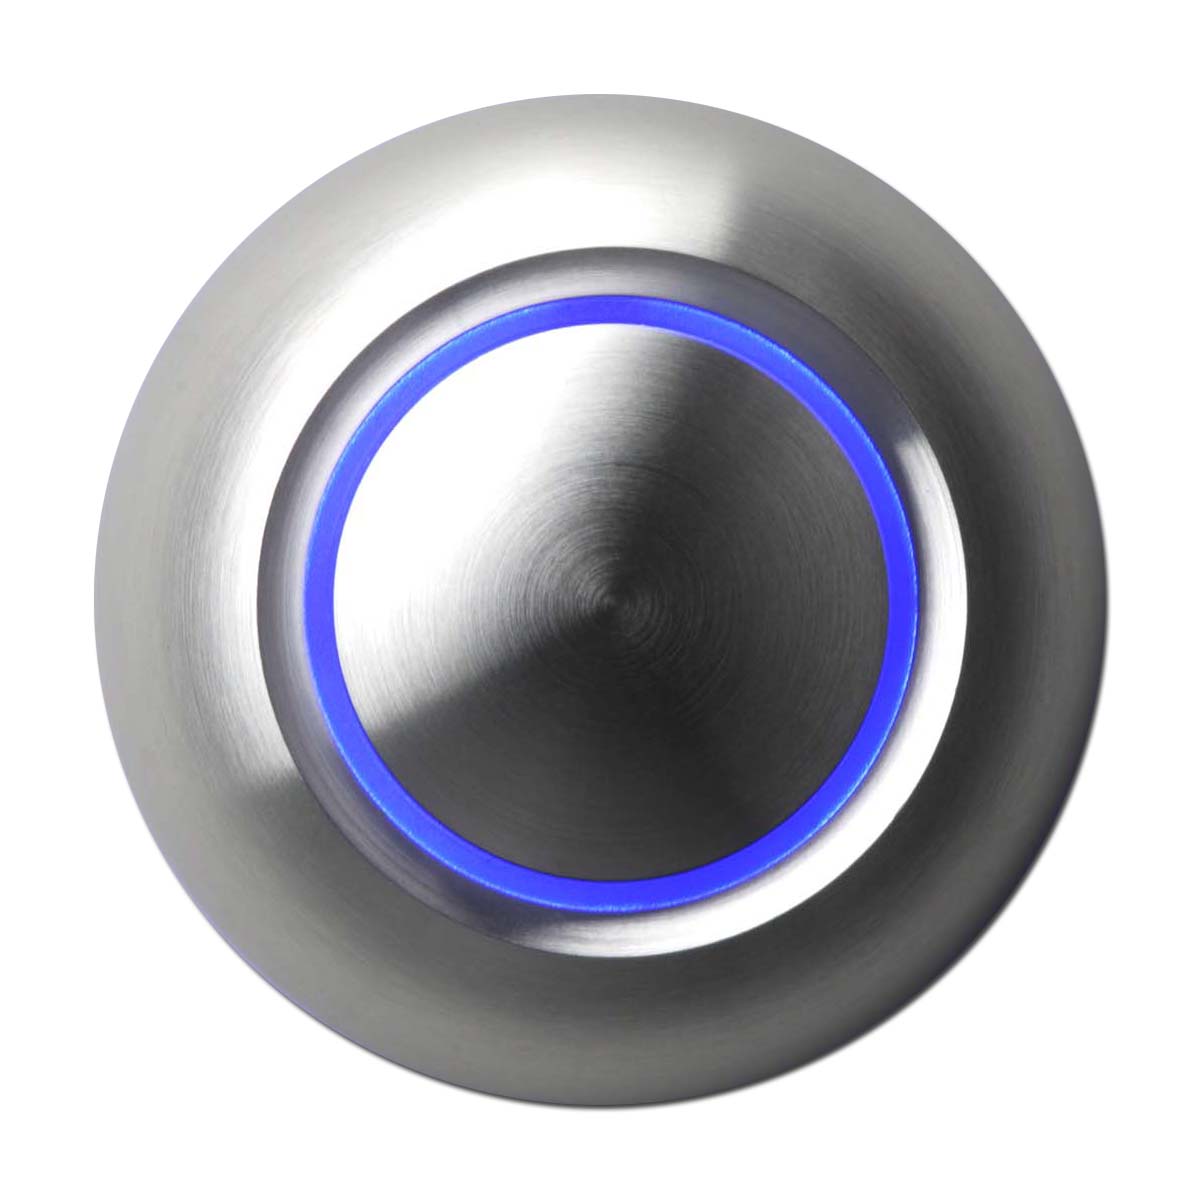 Кнопка круглая с подсветкой. Дверной звонок true illuminated Doorbell button, цвет Architectural Bronze. Кнопка металлическая с подсветкой. Кнопка звонка с подсветкой. Кнопка звонка металлическая.